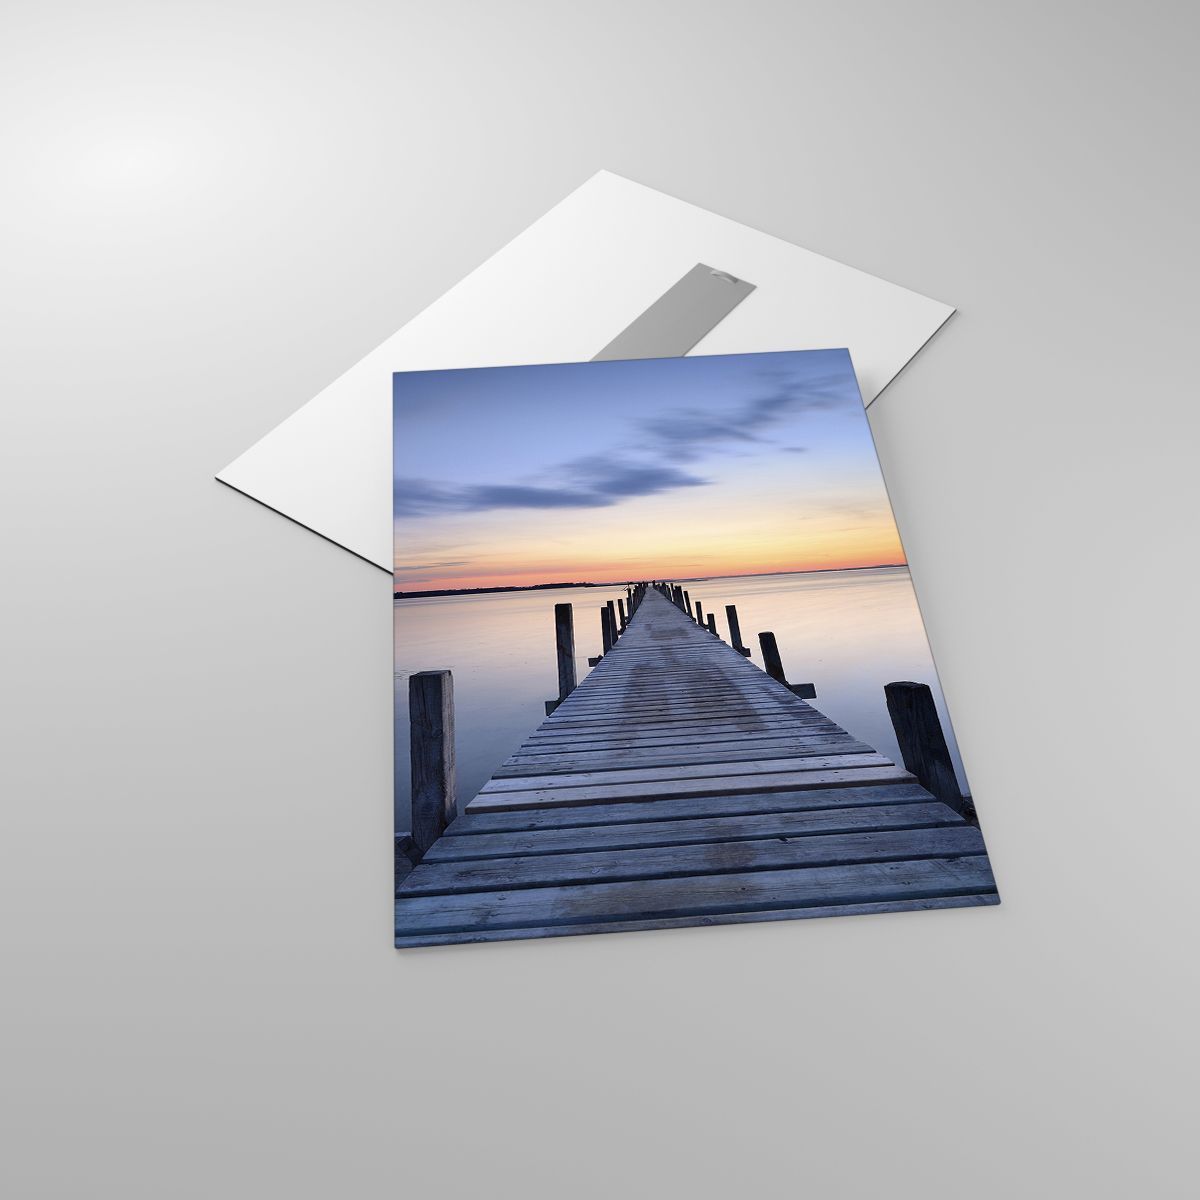 Glasbild Landschaft, Glasbild Bucht, Glasbild Holzbrücke, Glasbild Der Sonnenuntergang, Glasbild Morgen